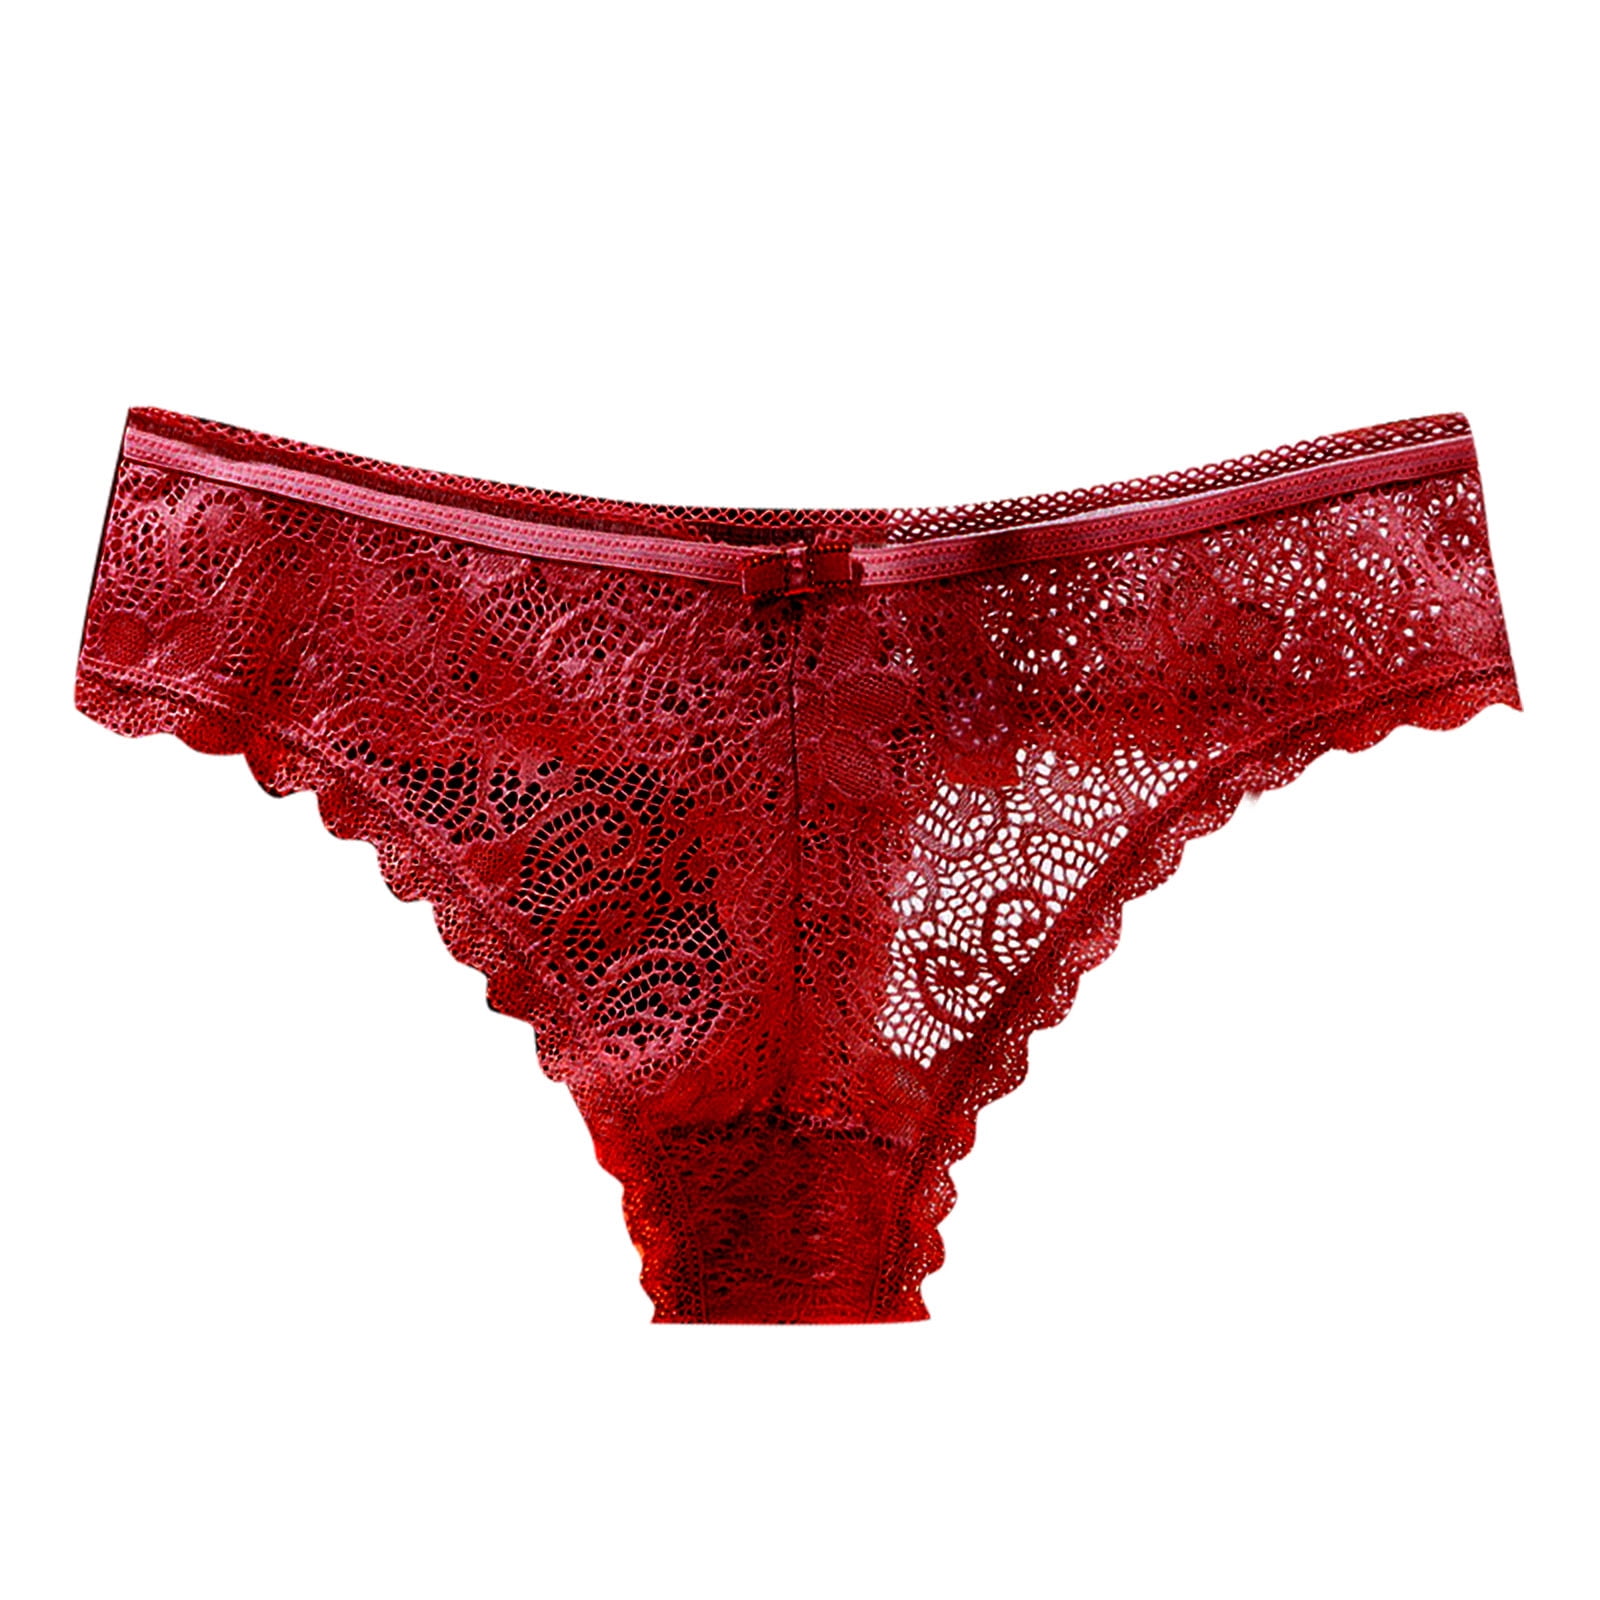 JDEFEG Muffin Top Underwear Women Underpants Thong Underwear